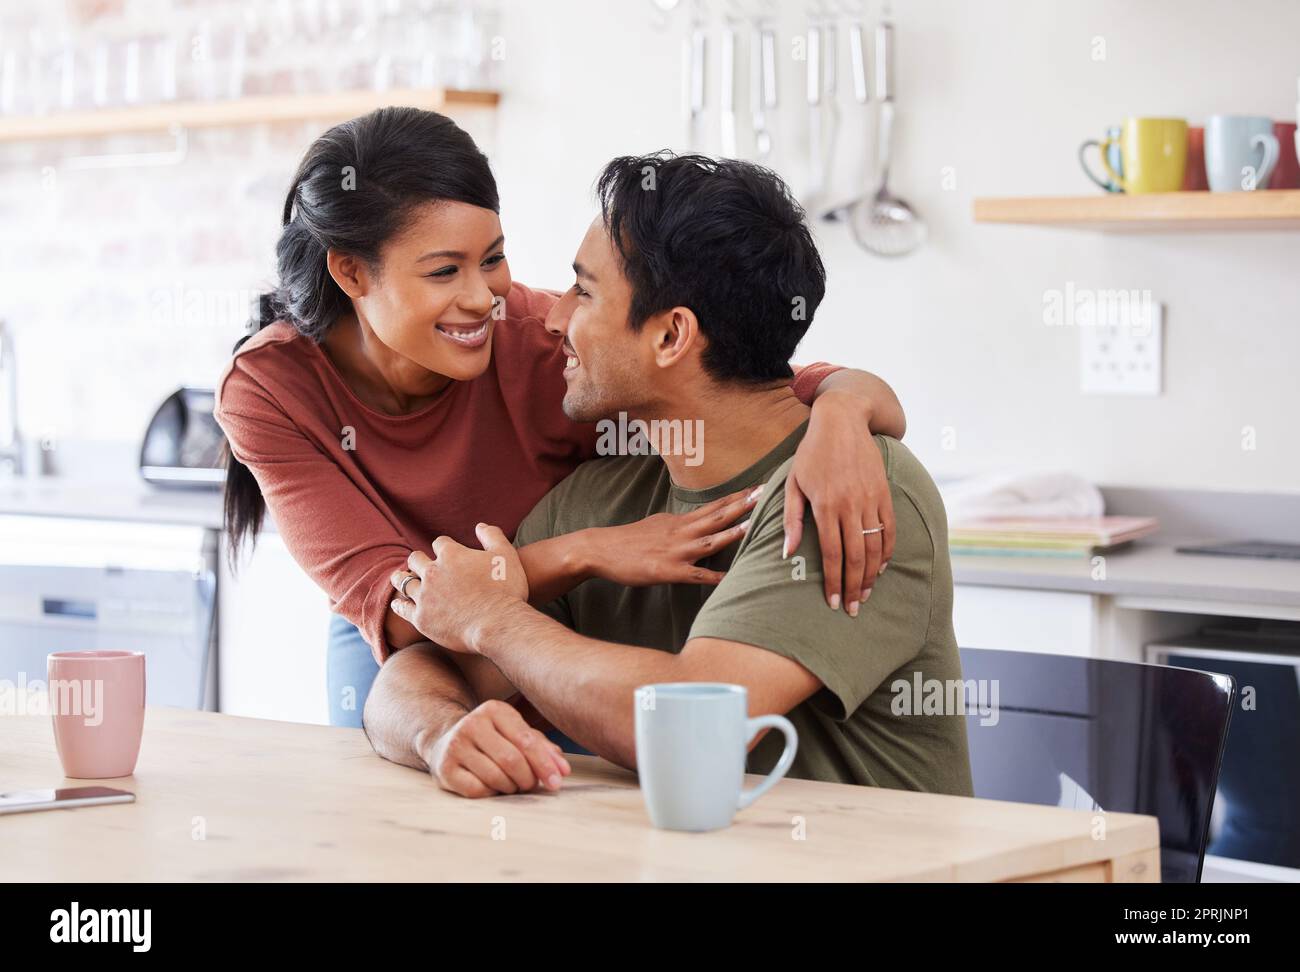 Paare lieben, glücklich und unterstützen oder fürsorgliche Gespräche,  umarmen und unterhalten sich zusammen am Küchentisch. Verheirateter  asiatischer Mann und Frau, Zuneigung oder Liebe, Heilung Stockfotografie -  Alamy